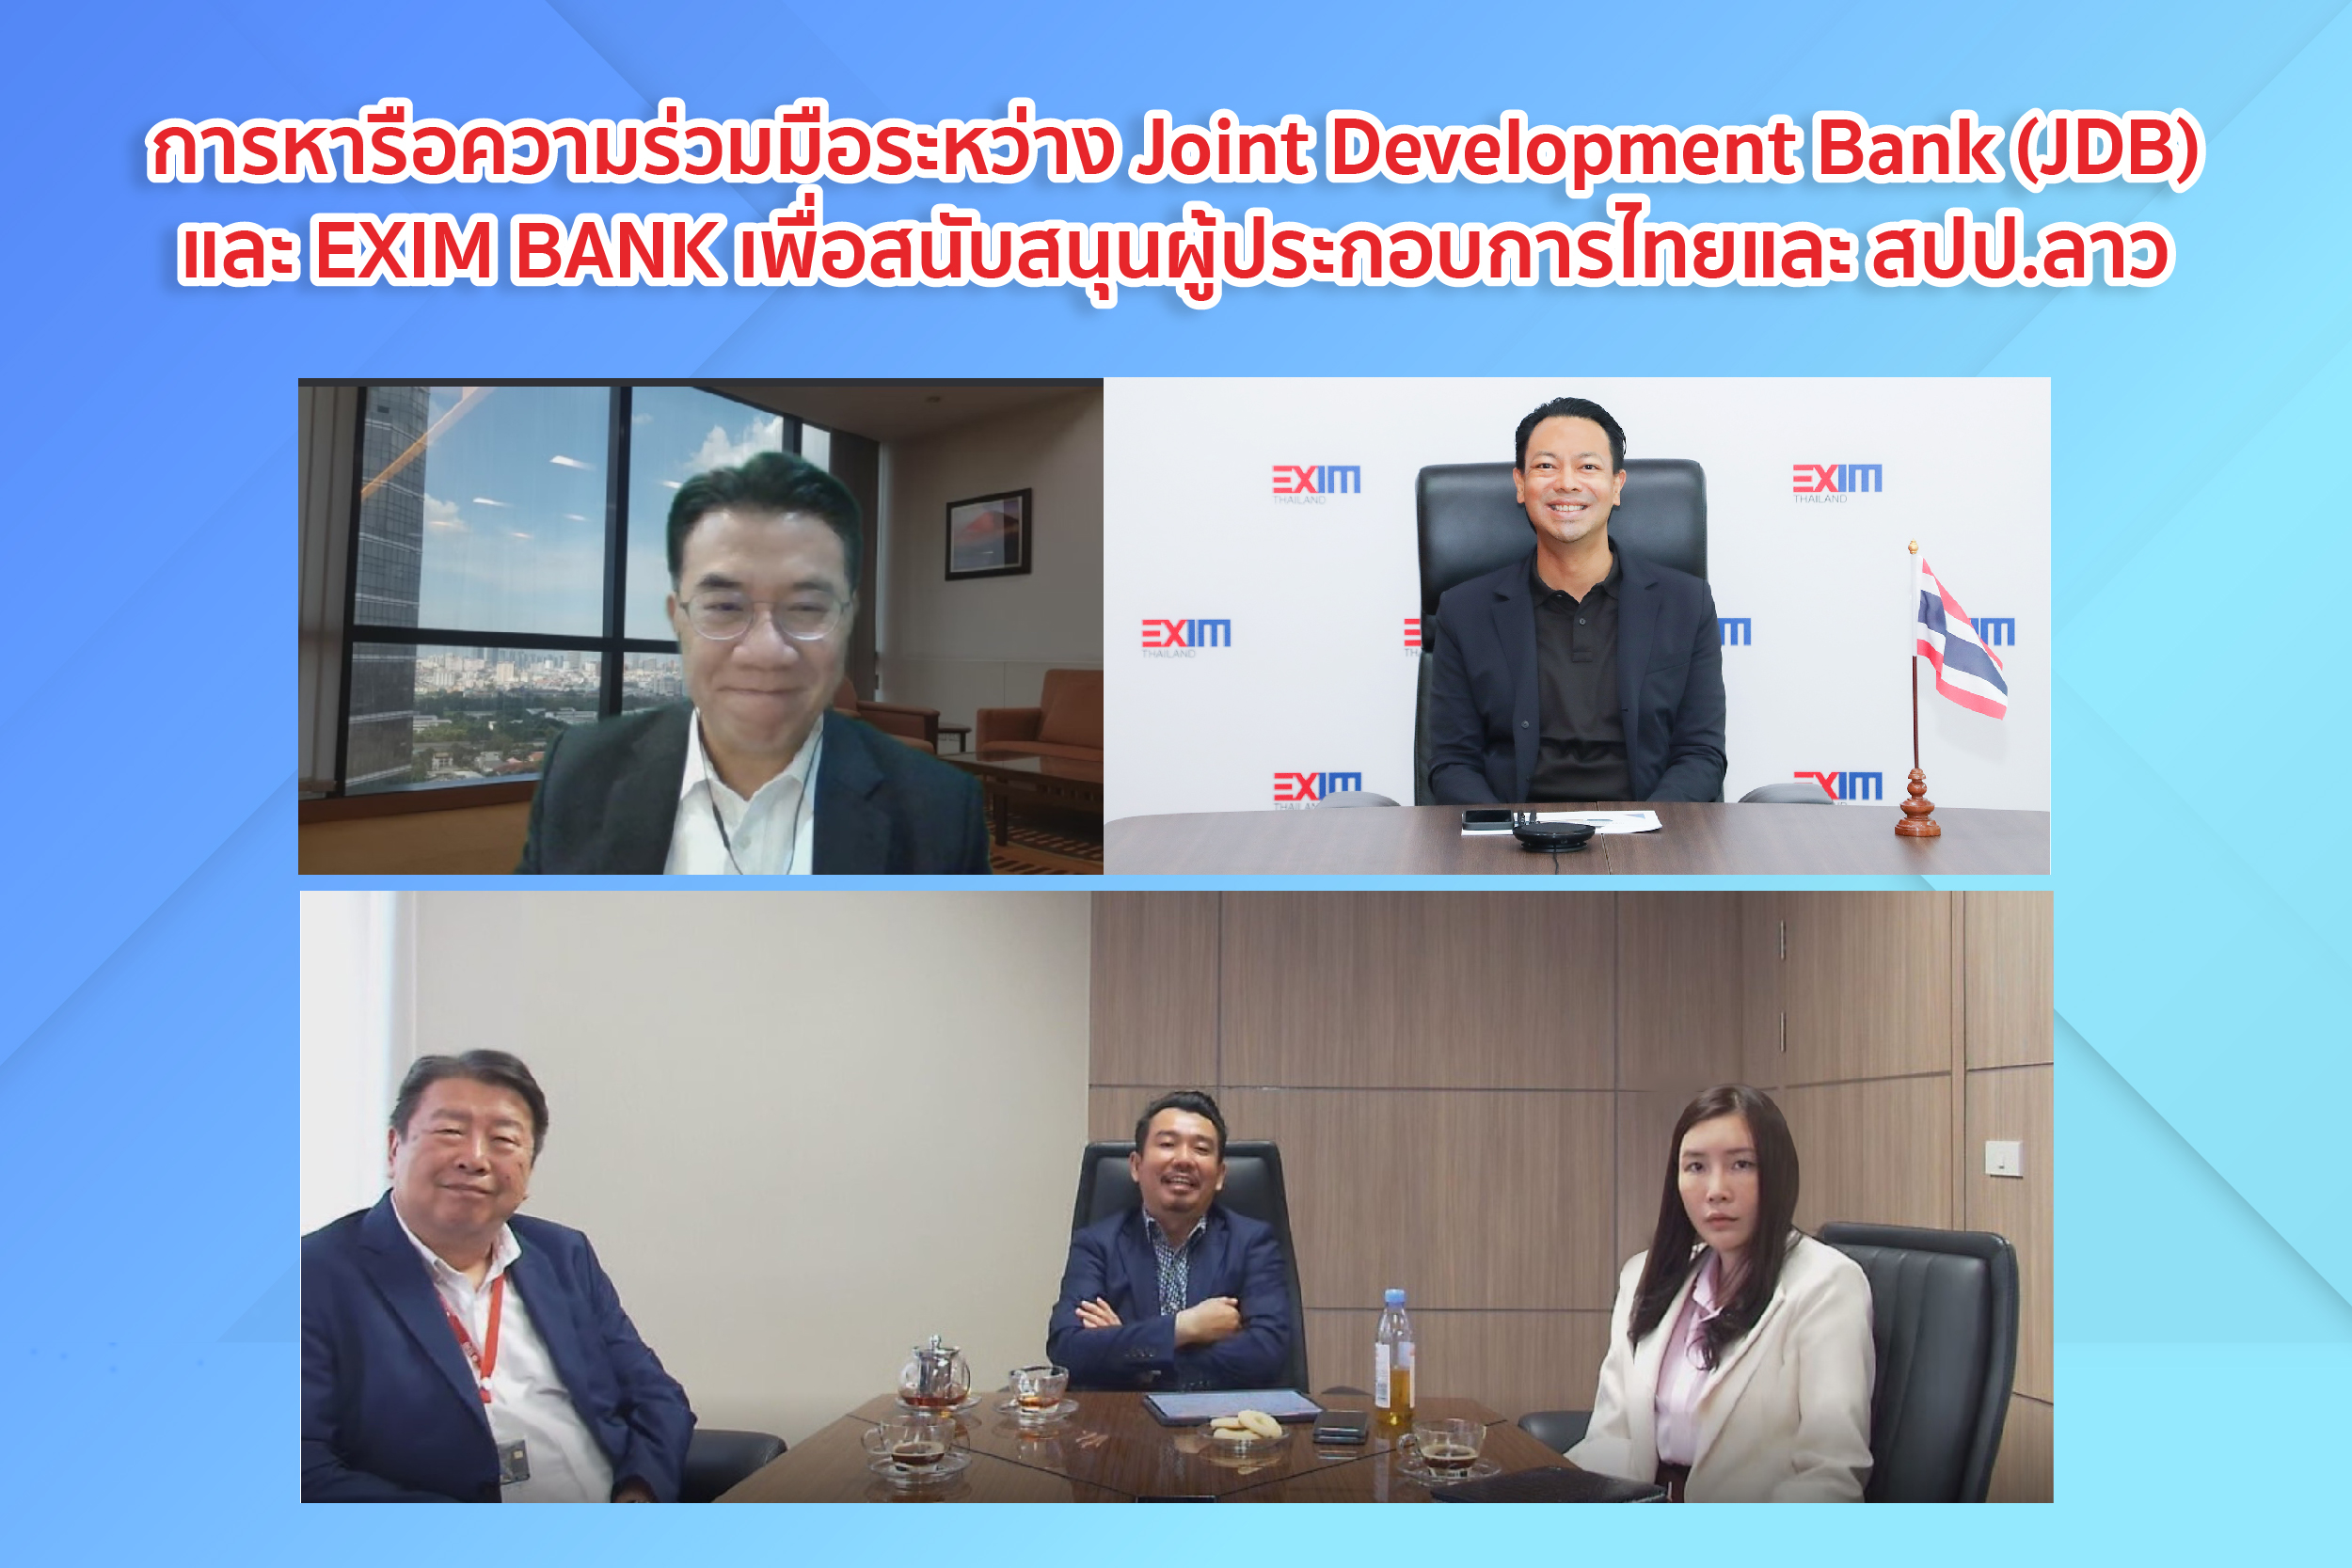 EXIM BANK พบปะหารือธนาคารร่วมพัฒนา สปป.ลาว ส่งเสริมการค้าและการลงทุนไทย-สปป.ลาว